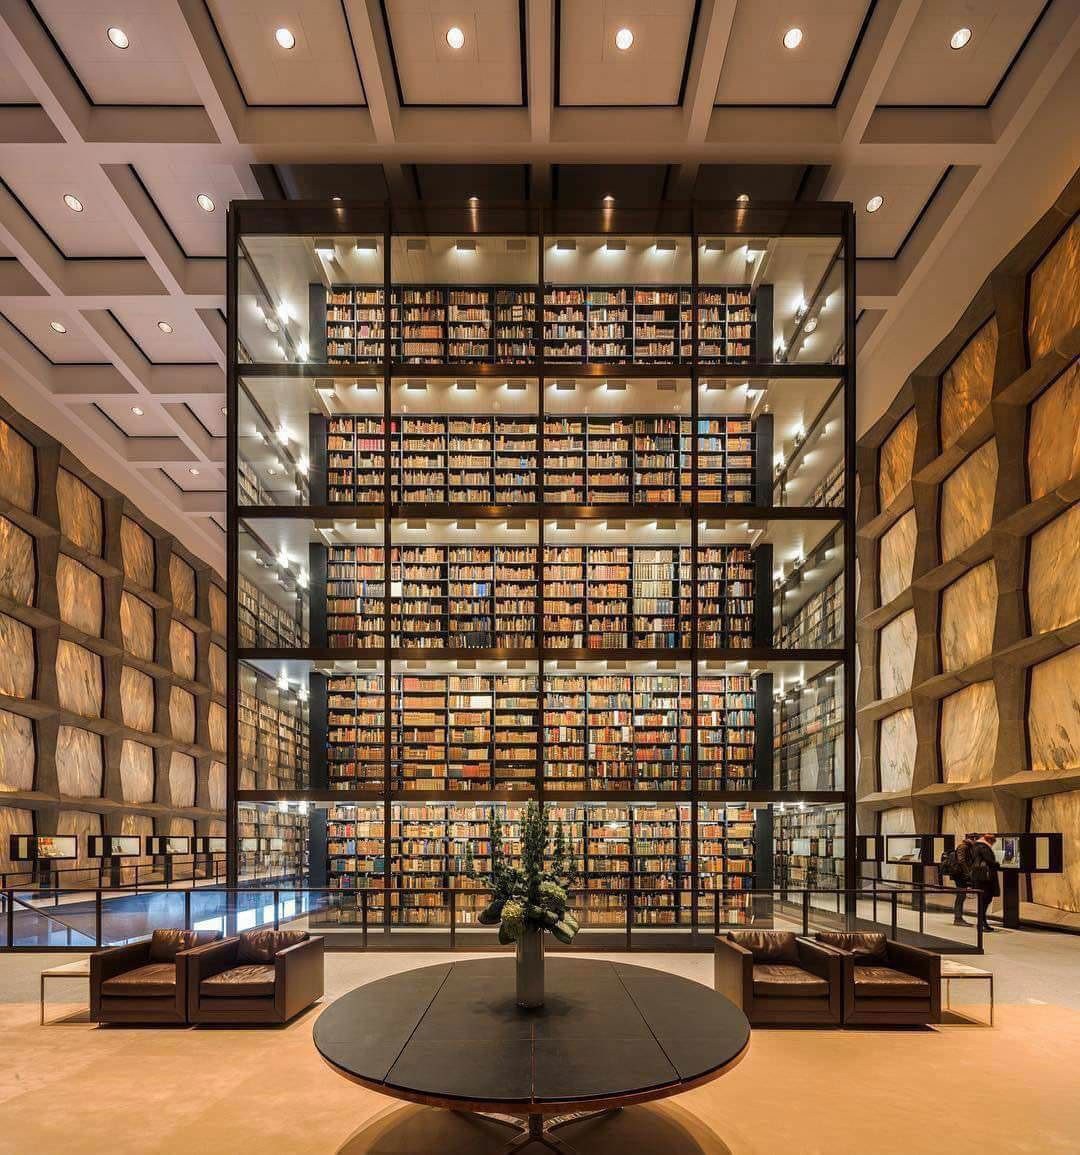 圖書館六層高的玻璃藏書塔，成為了內部空間的焦點。透過塔中的透明玻璃，一疊疊裝訂精美的古籍在溫暖的光芒中閃閃發光，呈現出一種靜謐而神聖的氛圍